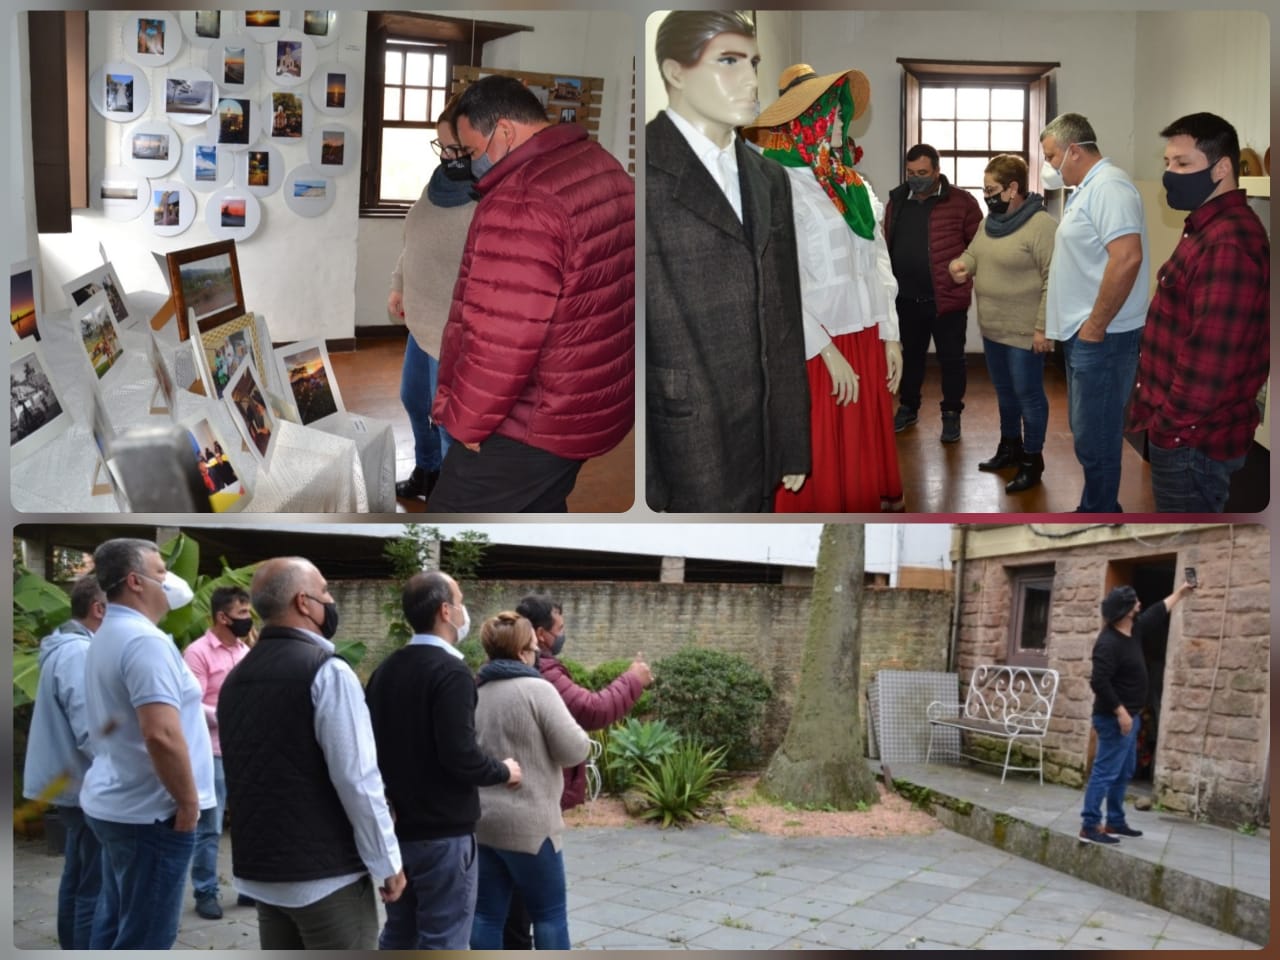 Bacana visita a exposição de fotografias no Museu Caldas Júnior